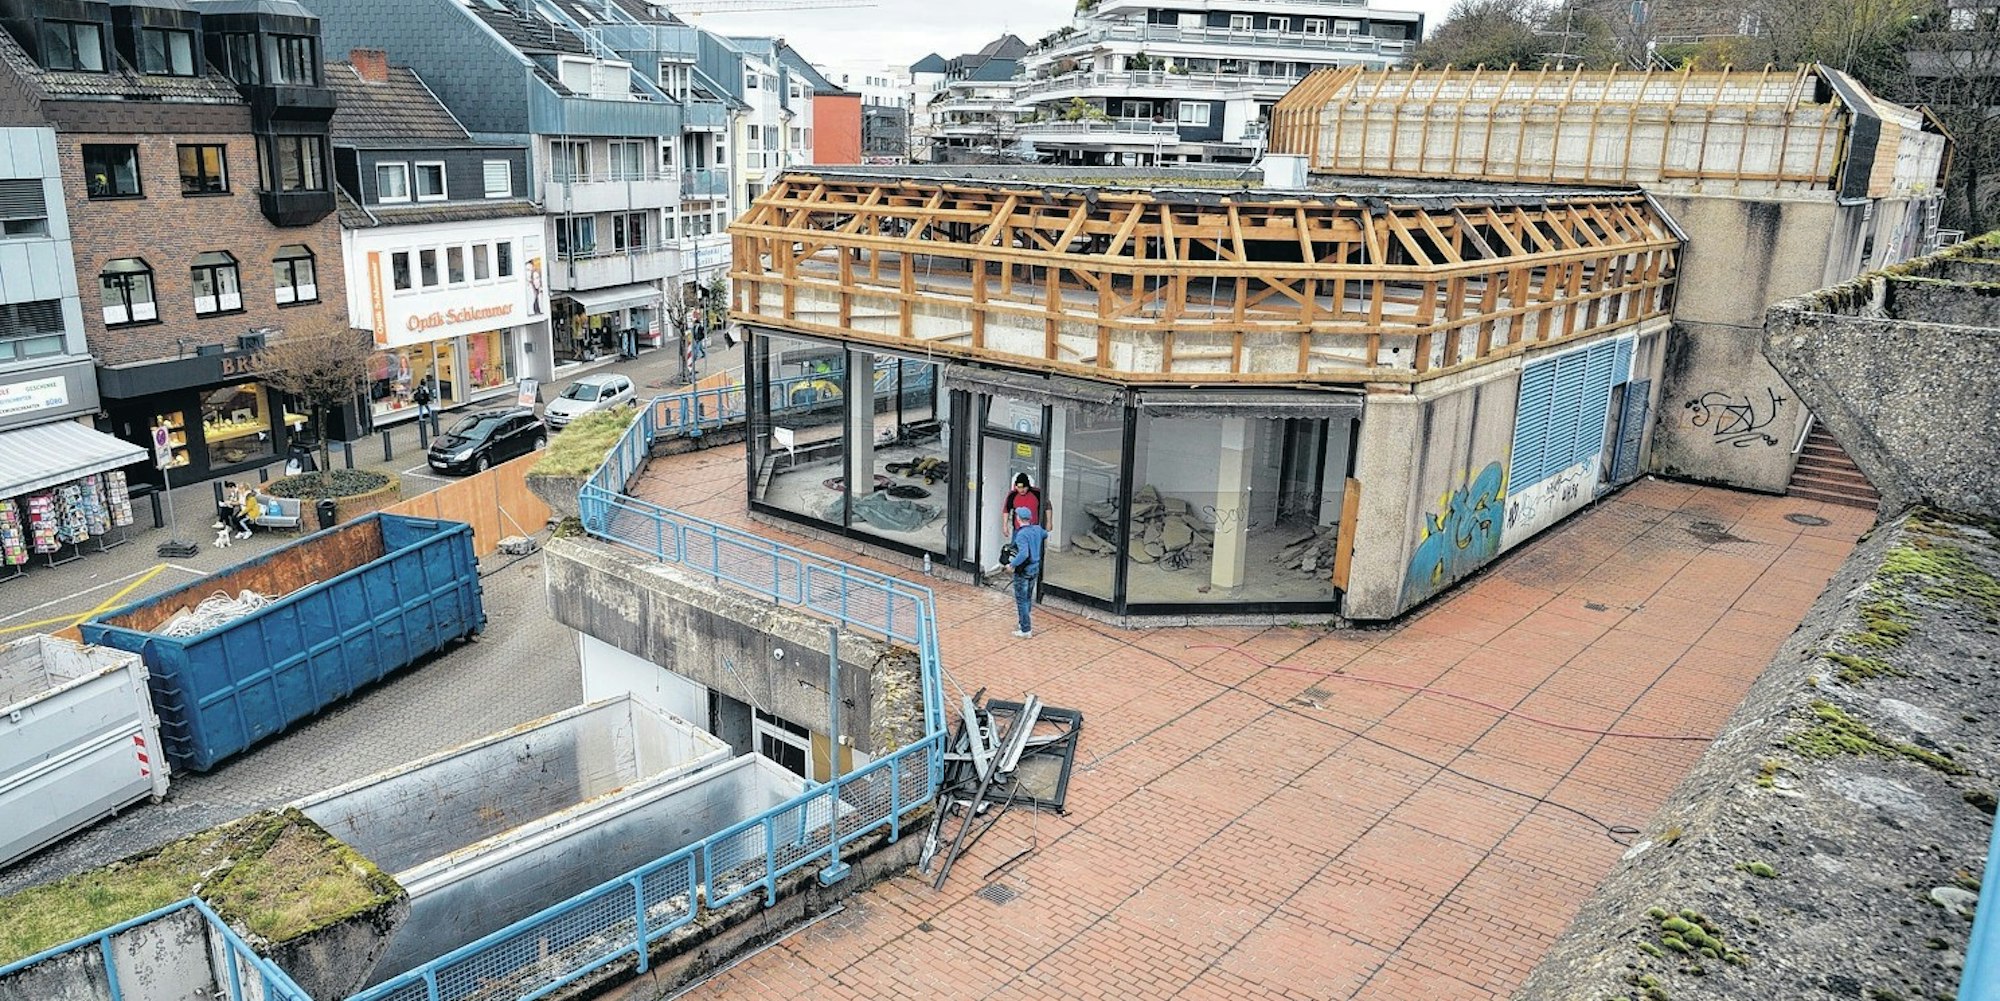 Überraschung beim Abbau der Pavillons: Unter den Schieferdächern verbarg sich nur ein schlichter Holzdachstuhl.